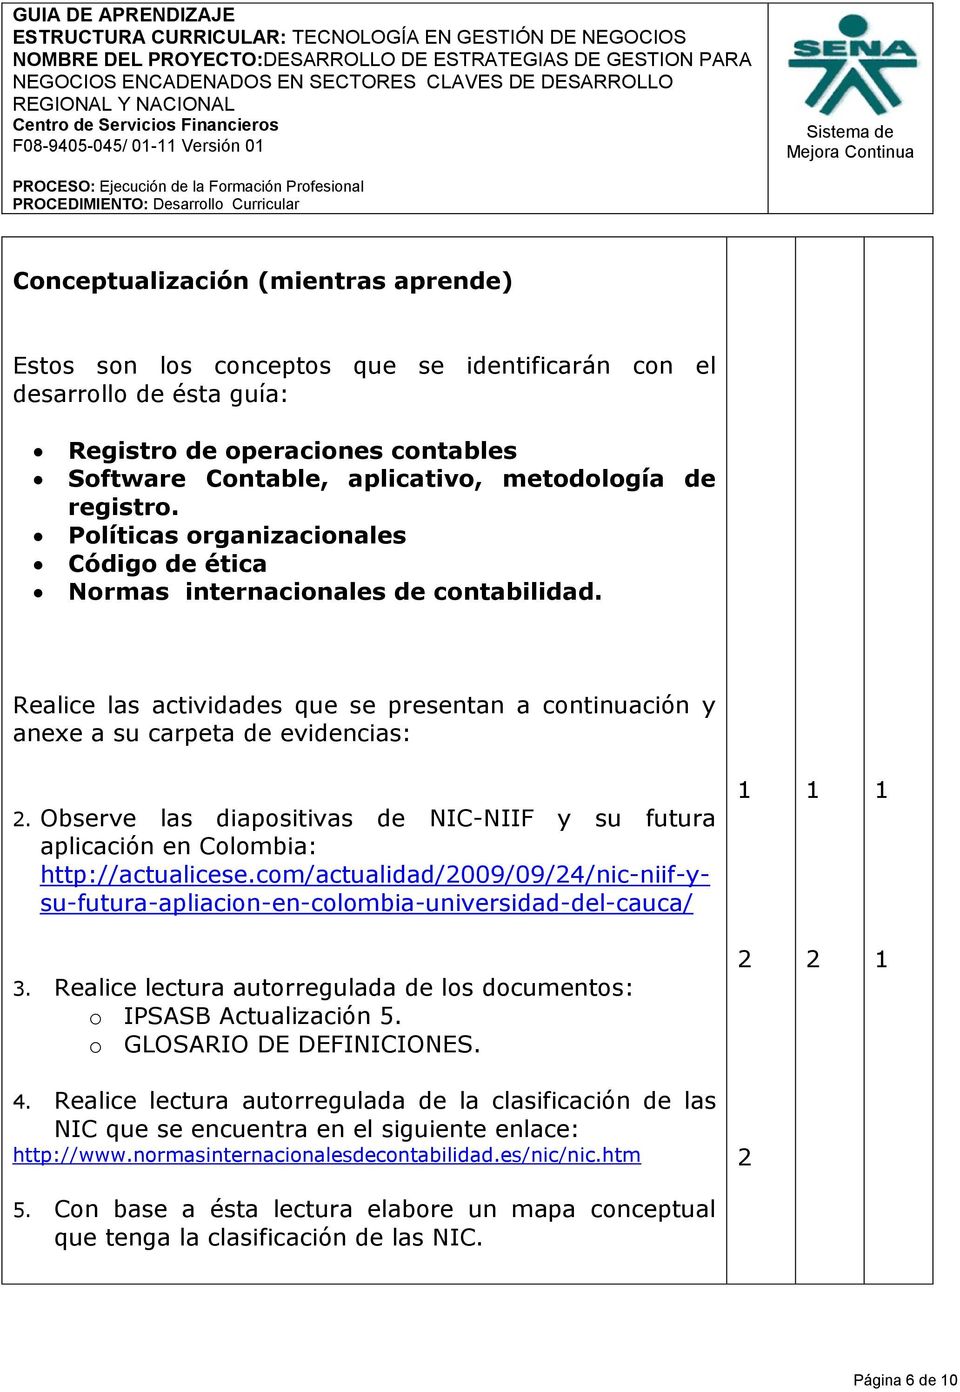 Observe las diapositivas de NIC-NIIF y su futura aplicación en Colombia: http://actualicese.com/actualidad/2009/09/24/nic-niif-ysu-futura-apliacion-en-colombia-universidad-del-cauca/ 3.